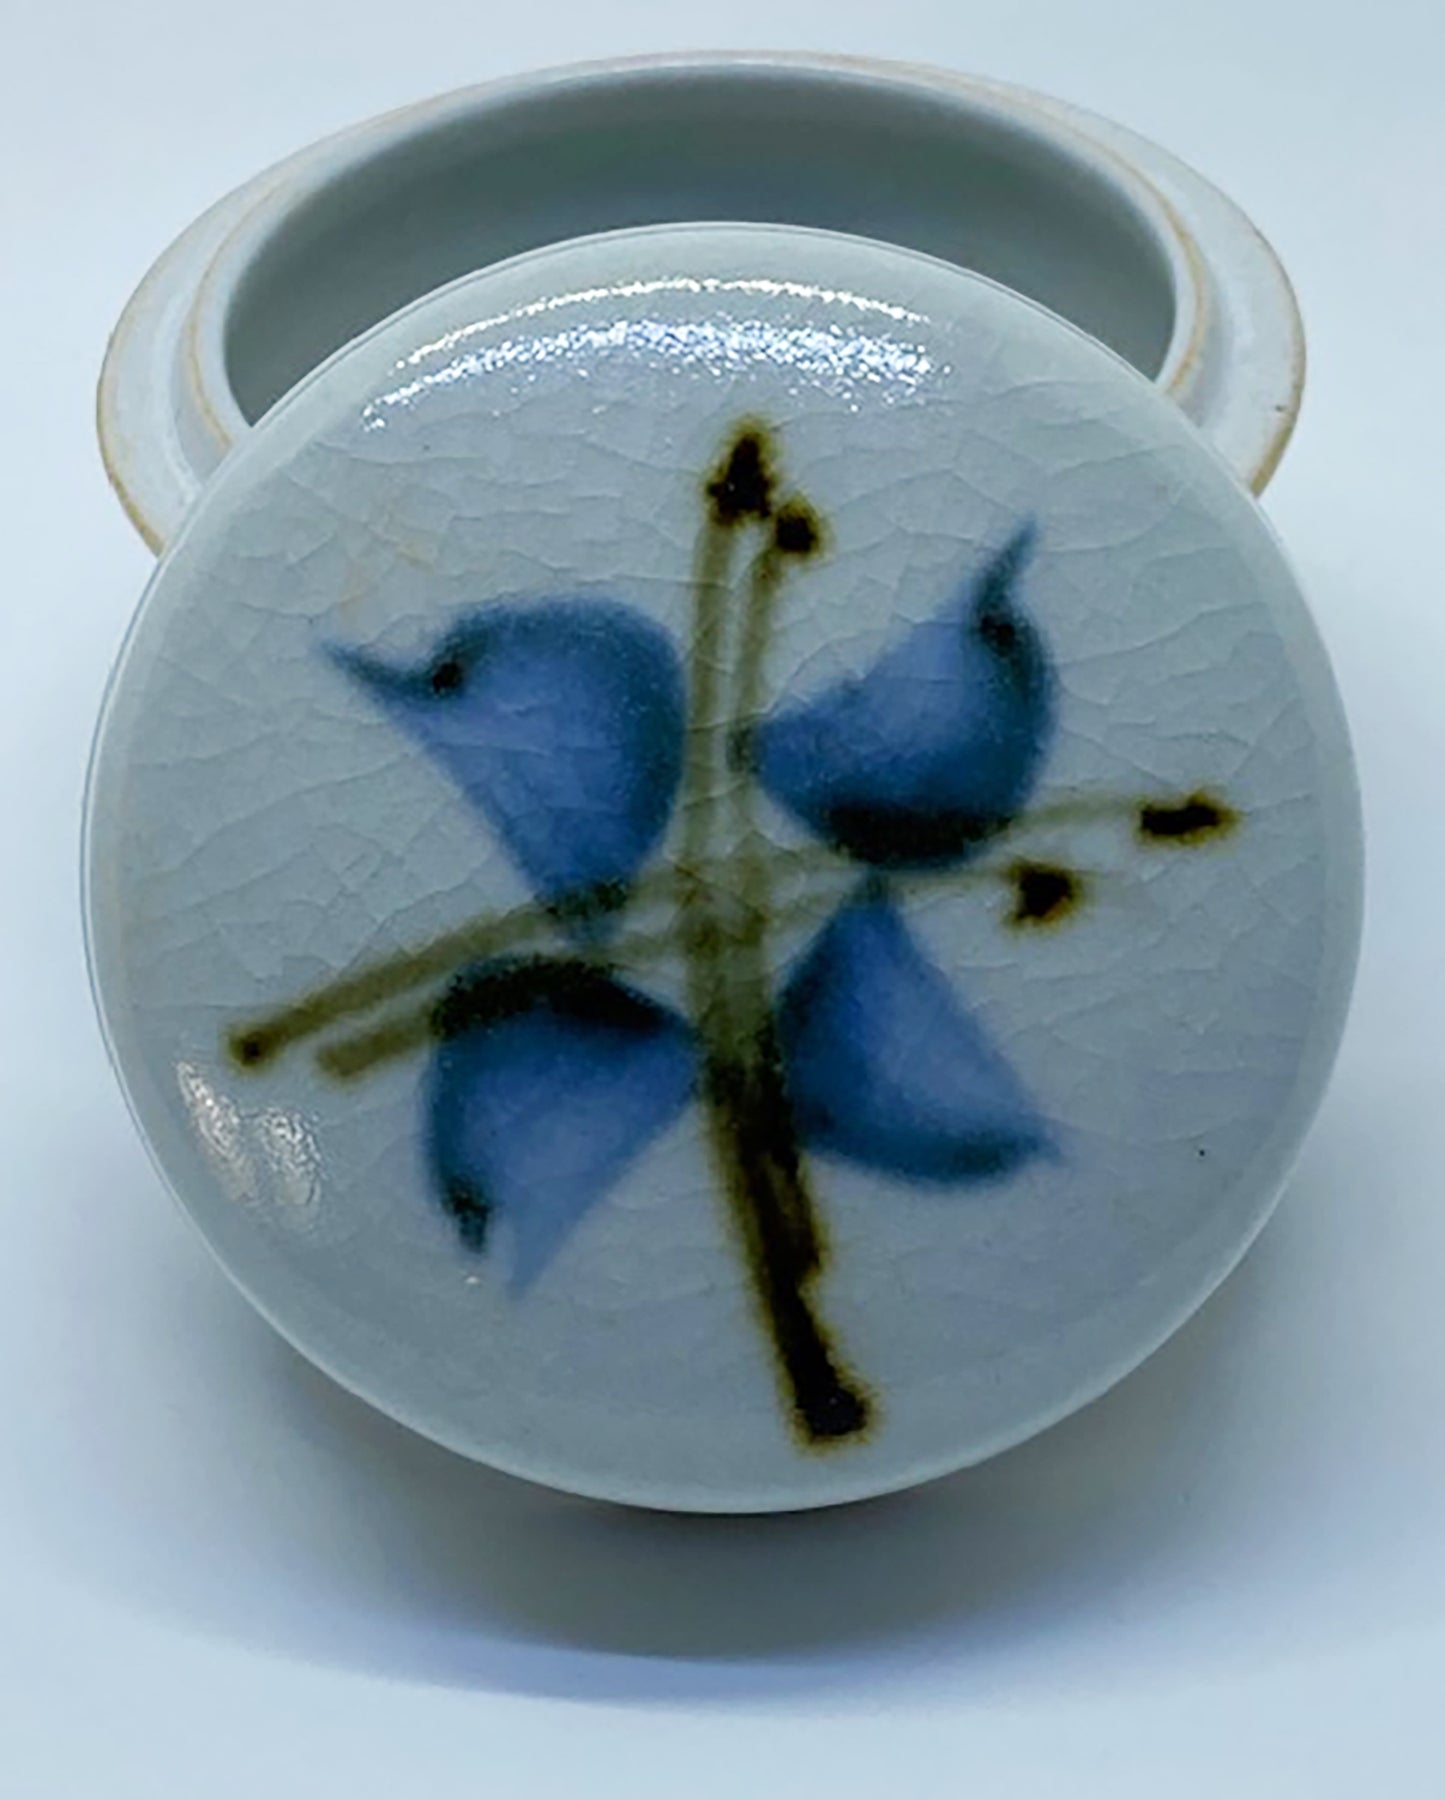 Les Blakebrough ceramic trinket container